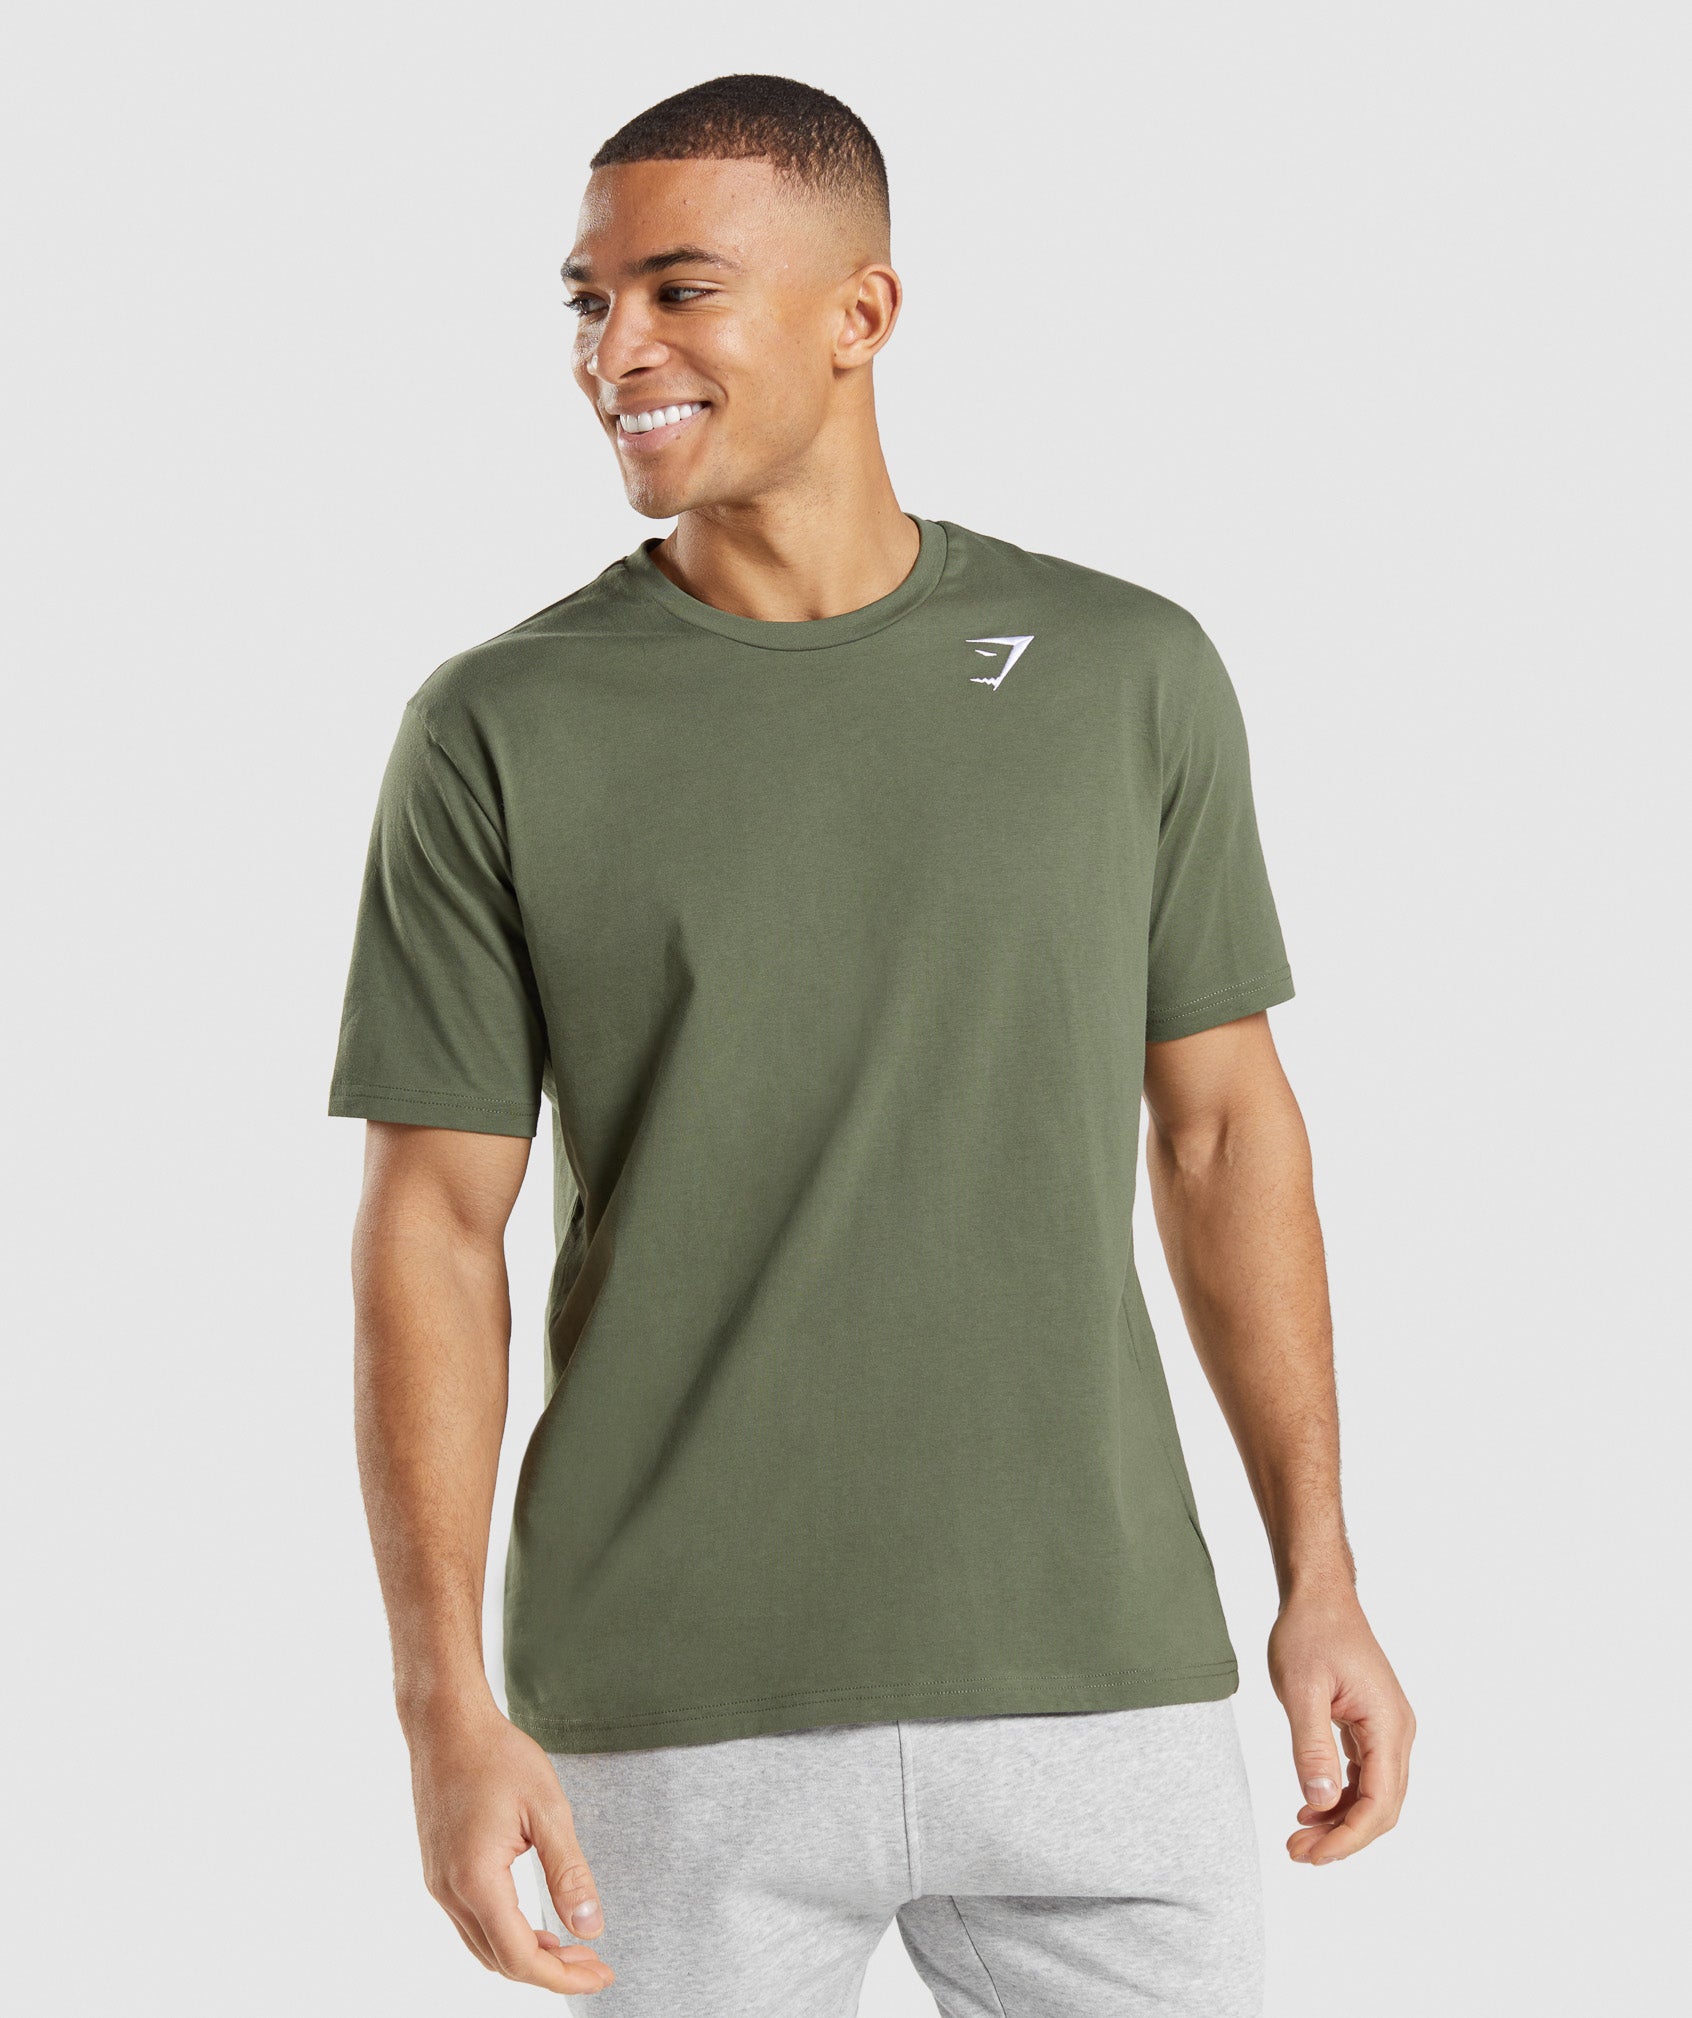 Crest T-Shirt en Core Olive